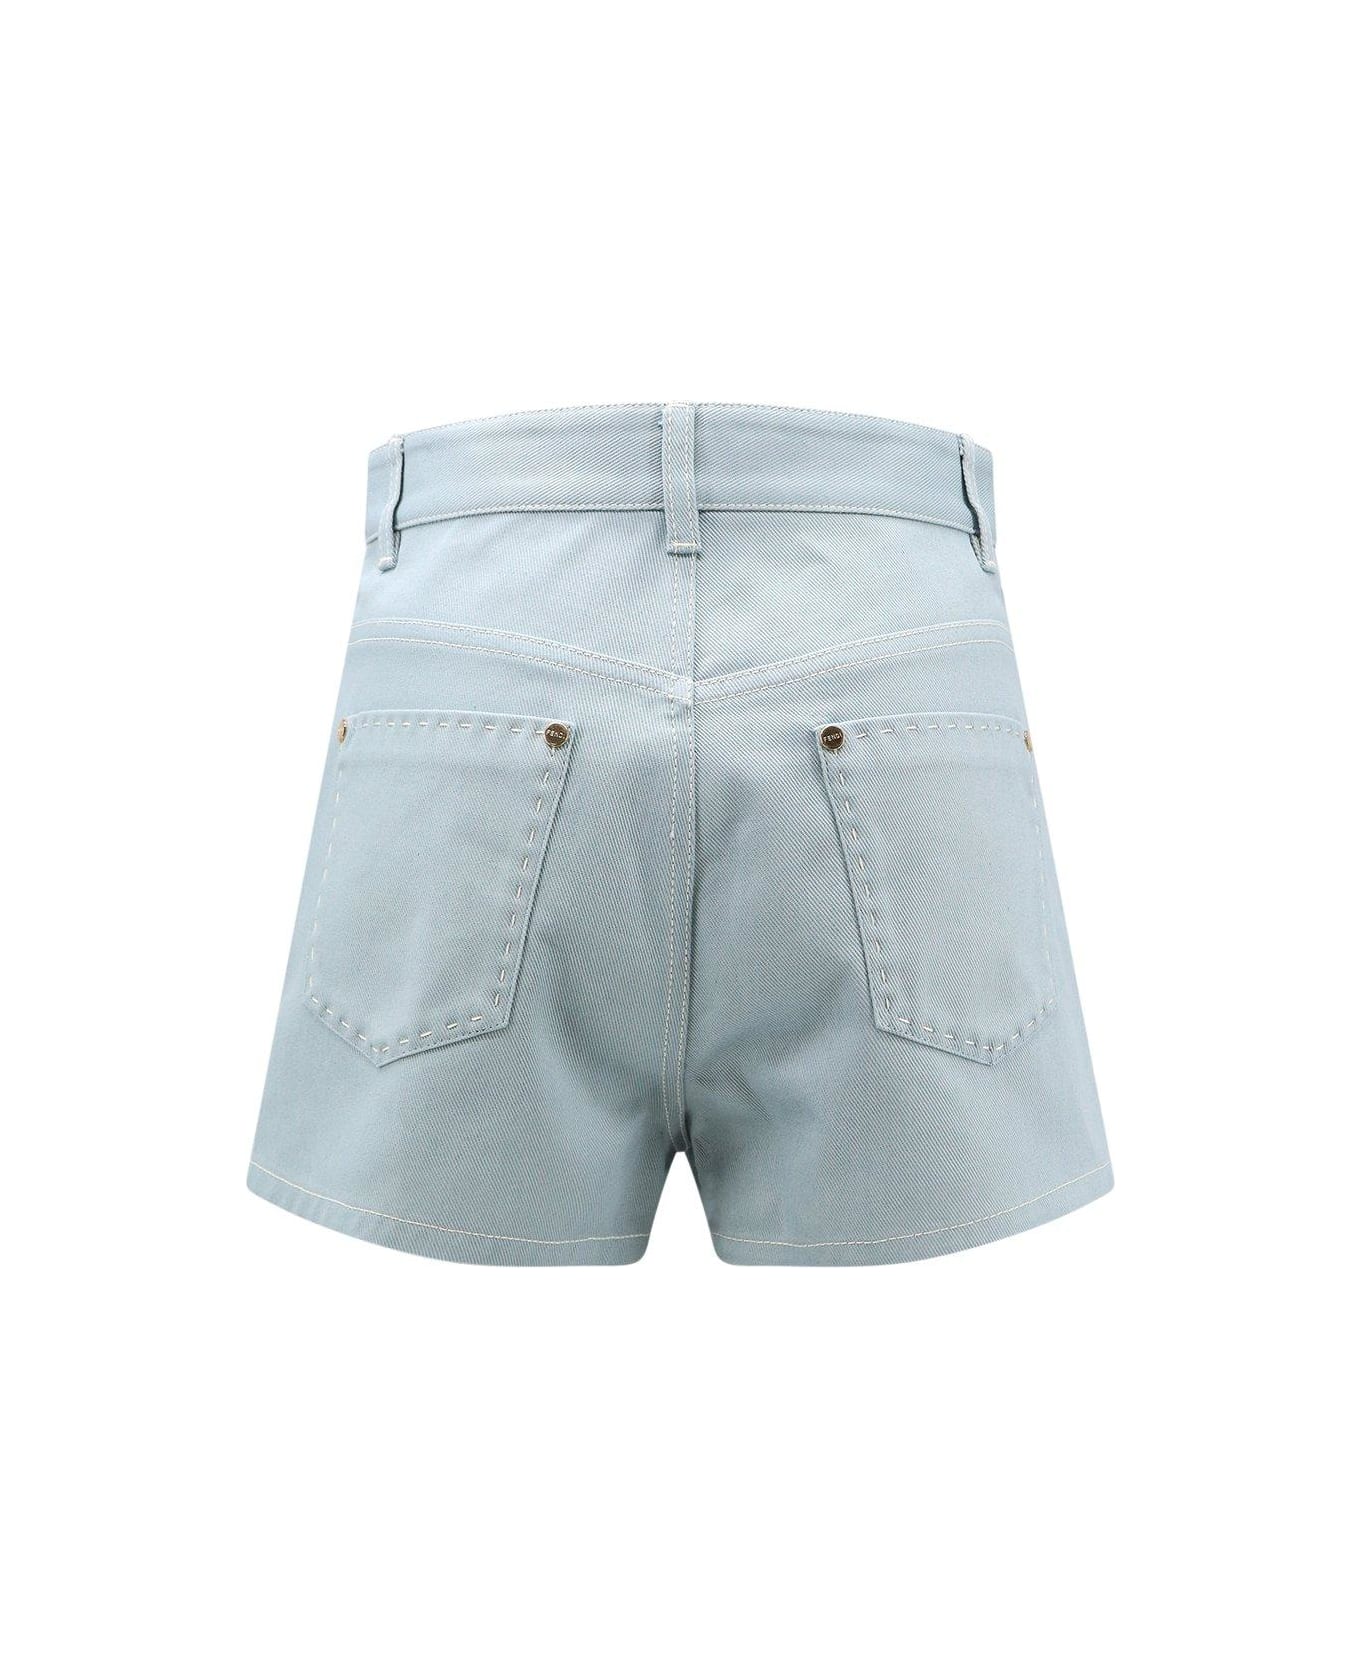 Fendi Ff Embroidered Denim Shorts - Blue ショートパンツ